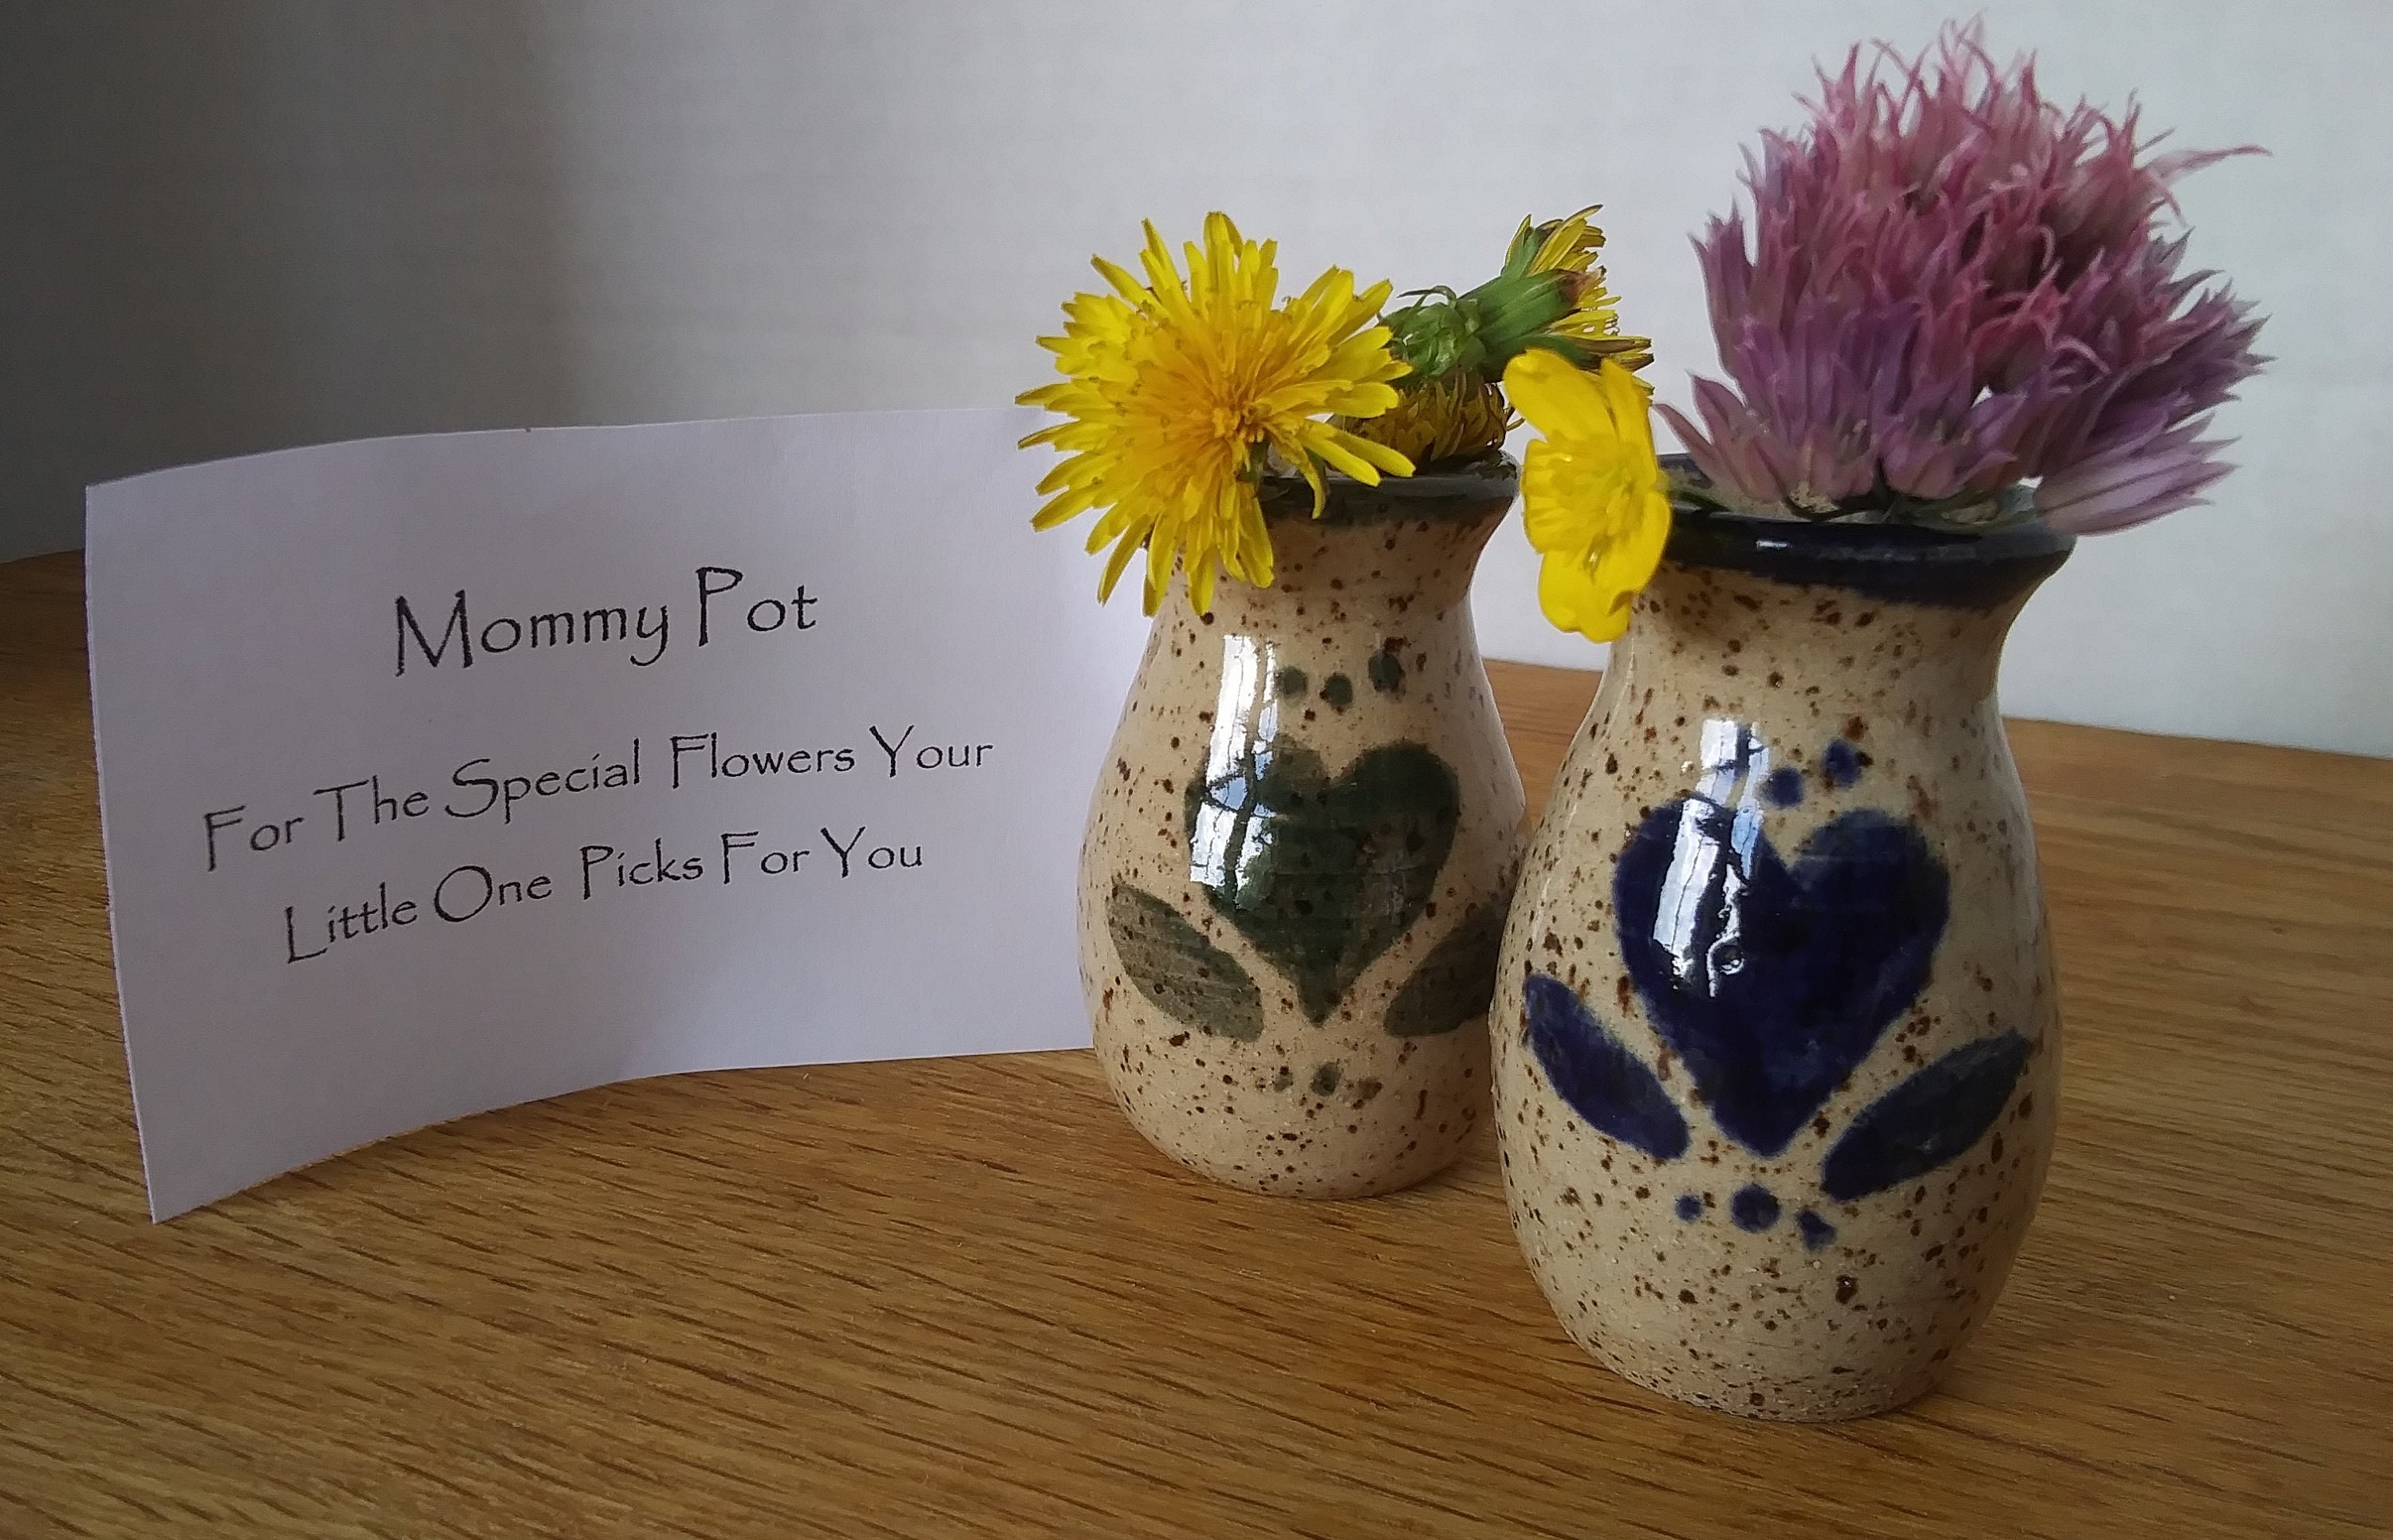 Mother's Day Flower Holder – Sawdust & Swirls